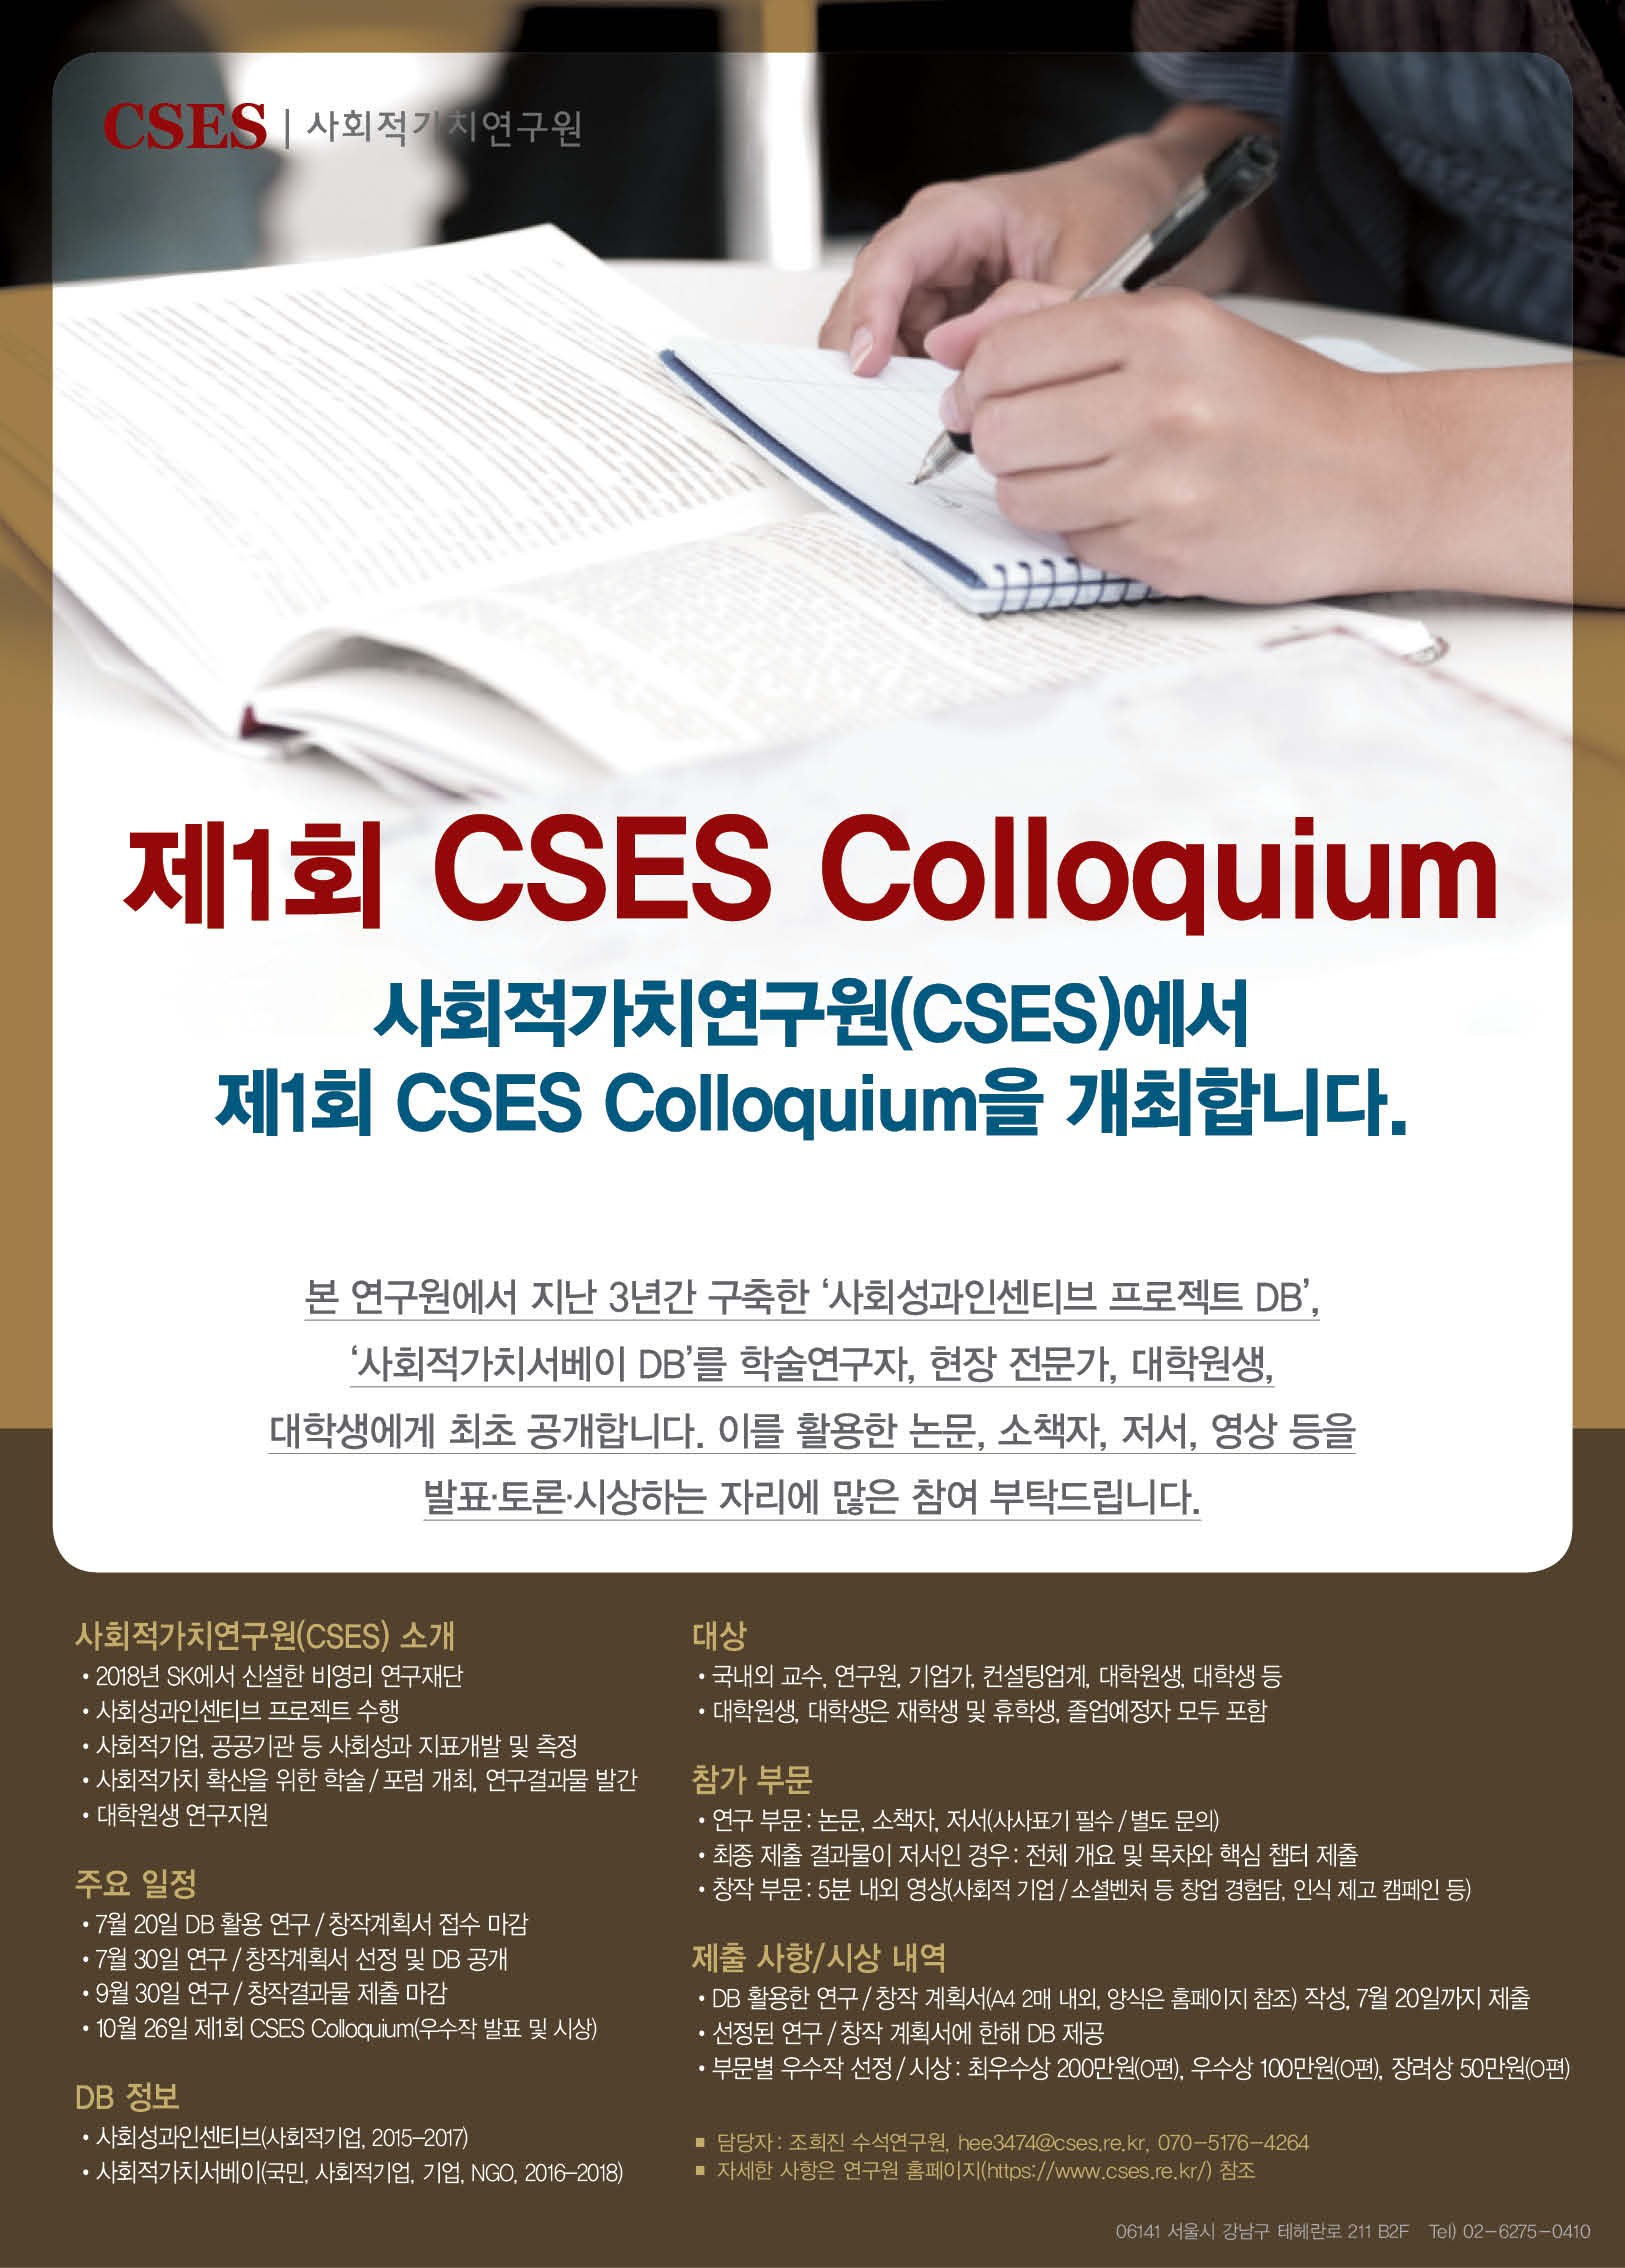 제 1회 CSES Colloquium 개최 및 학술 DB 공개에 대한 이미지 입니다.(자세한 내용 하단 참조)